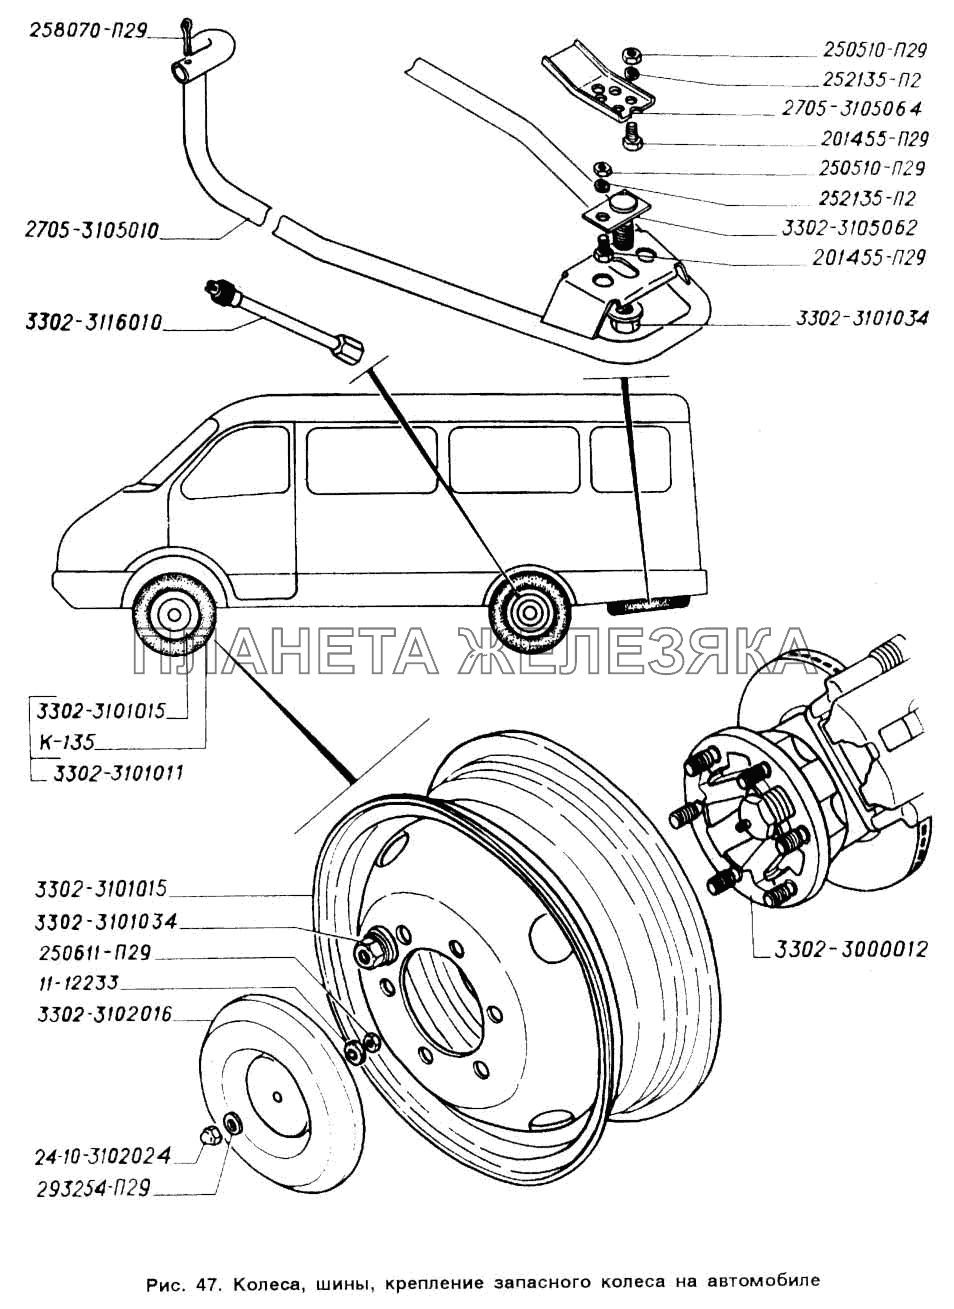 Колеса, шины, крепление запасного колеса на автомобиле ГАЗ-2705 (ГАЗель)